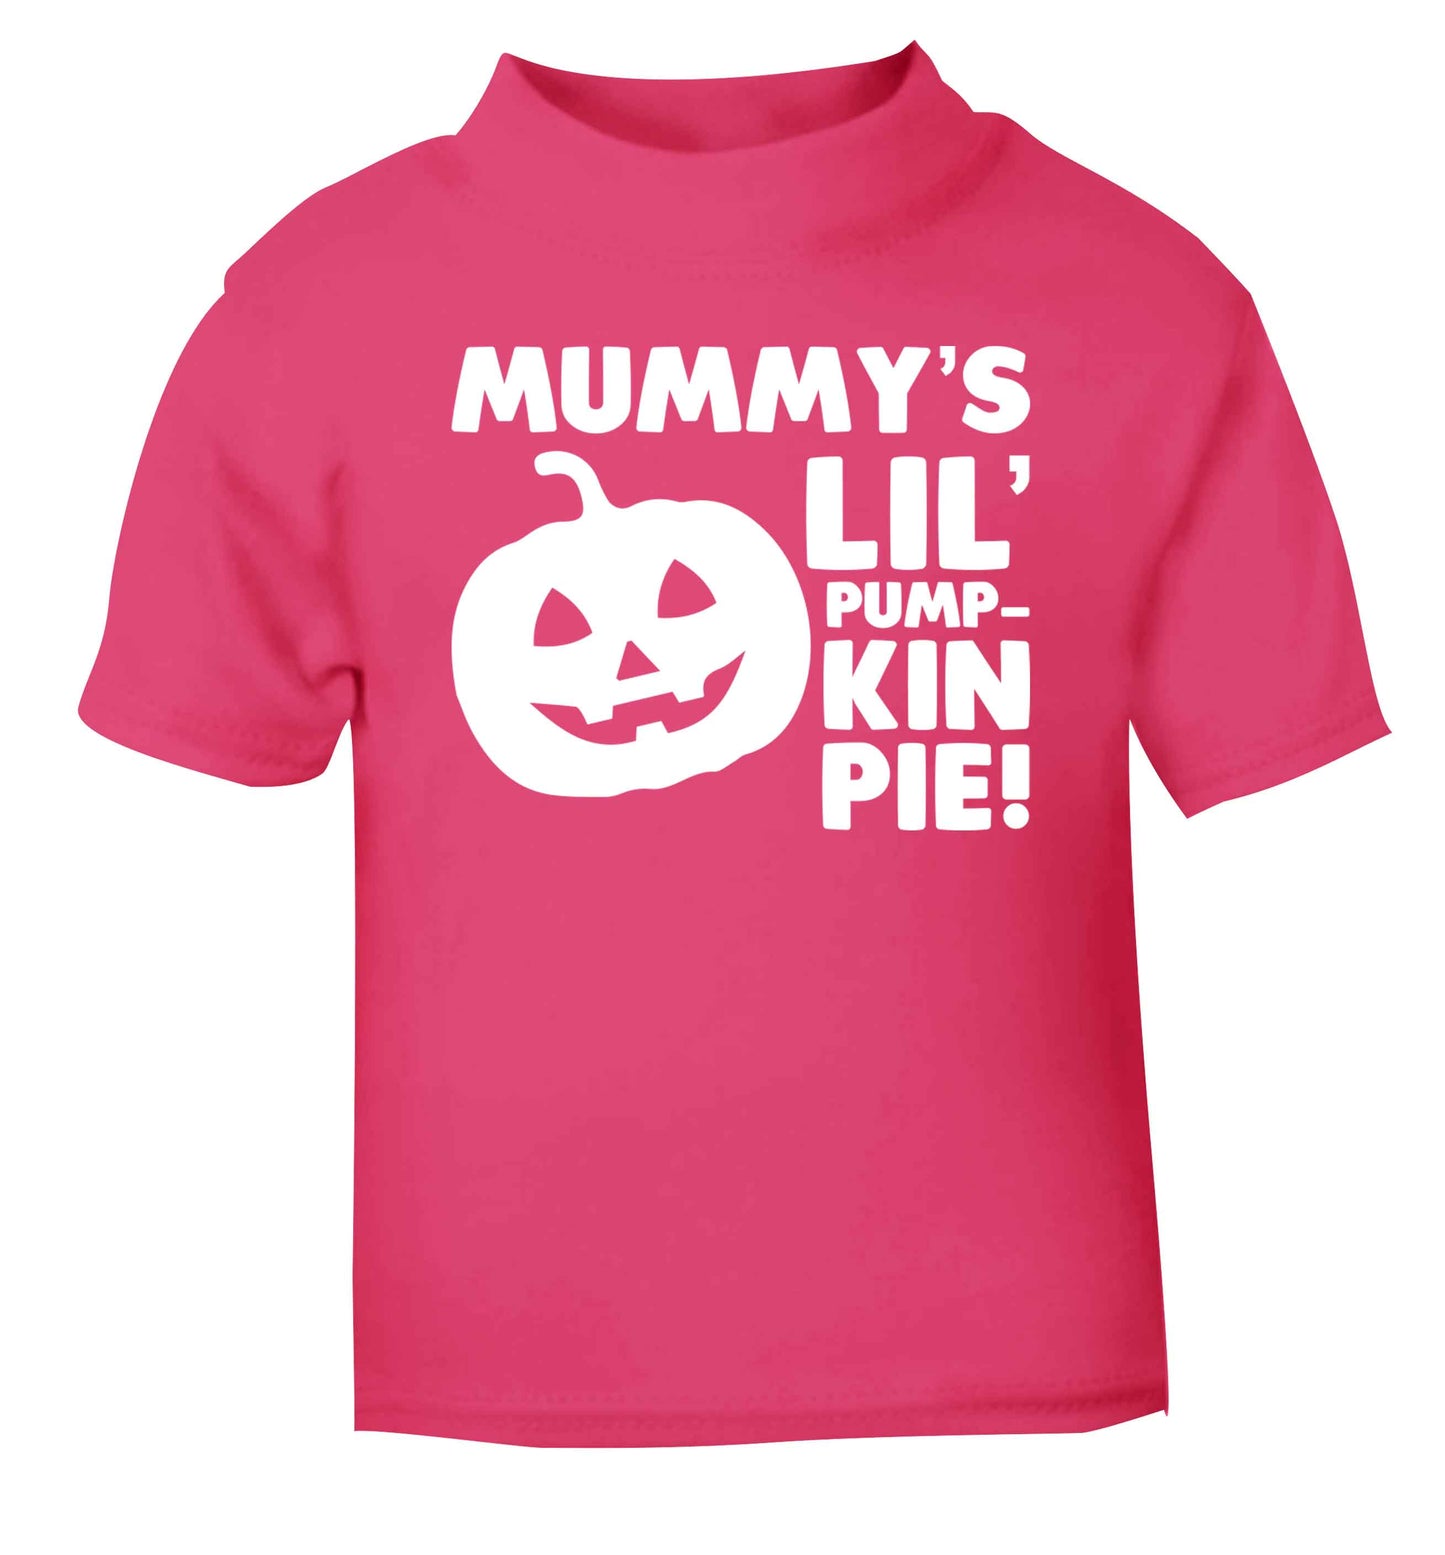 Mummy's lil' pumpkin pie pink baby toddler Tshirt 2 Years